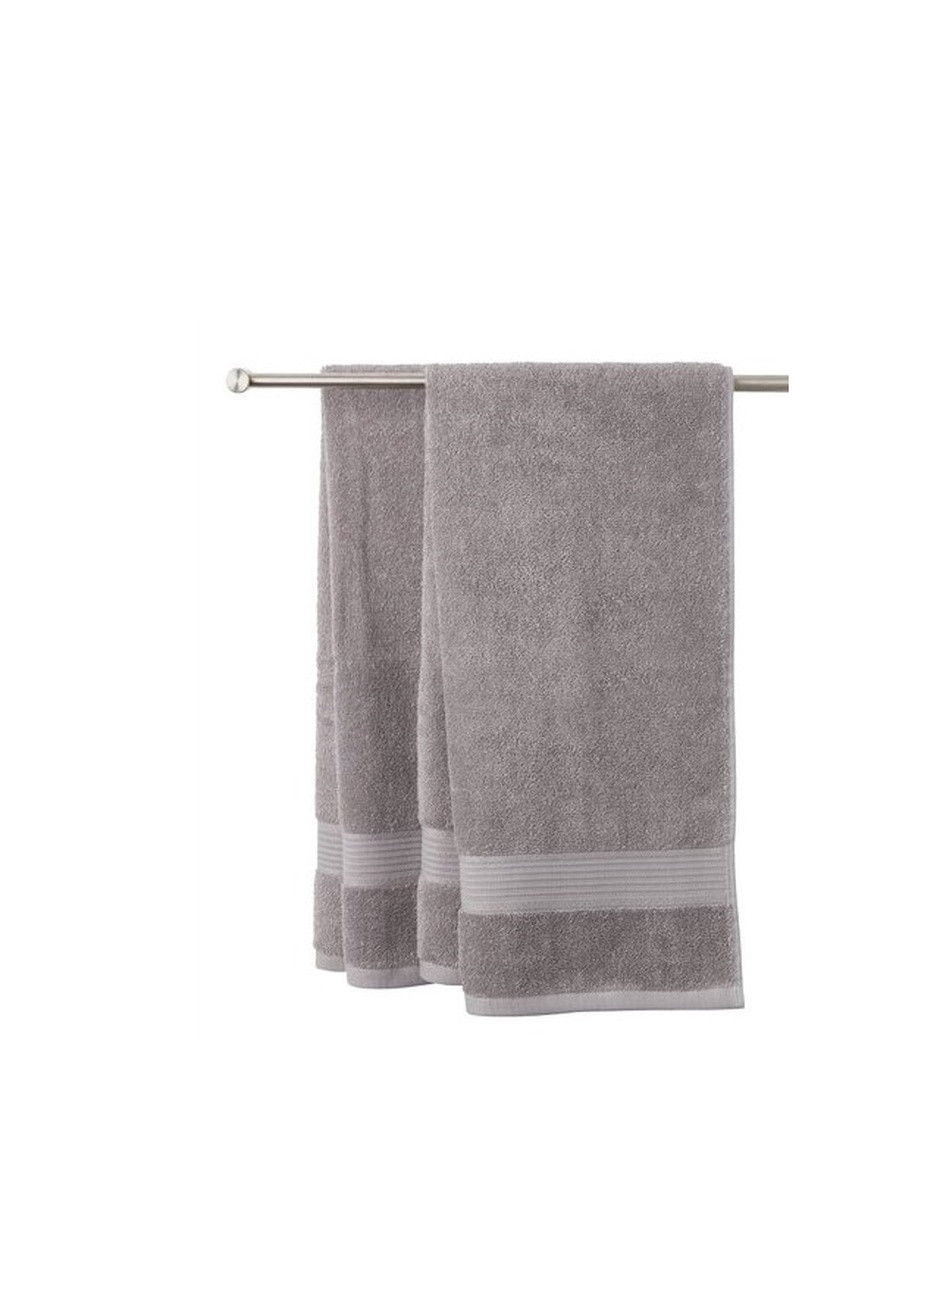 No Brand полотенце хлопок 50x100см серый производство - Китай